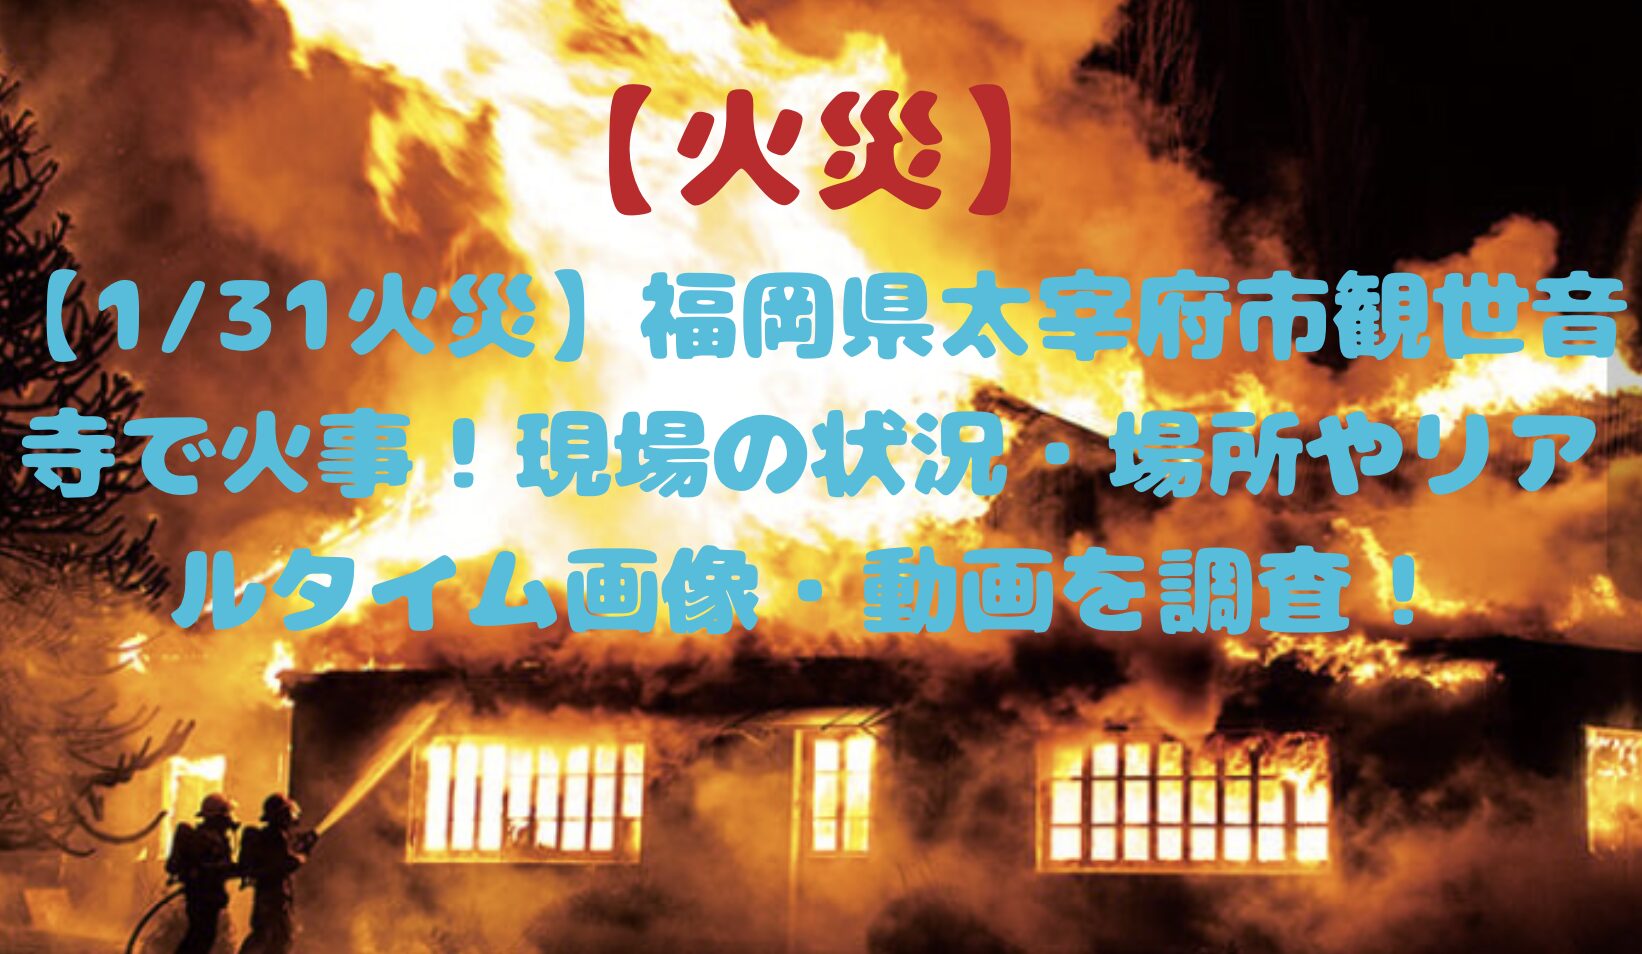 福岡県太宰府時観世音寺で火事